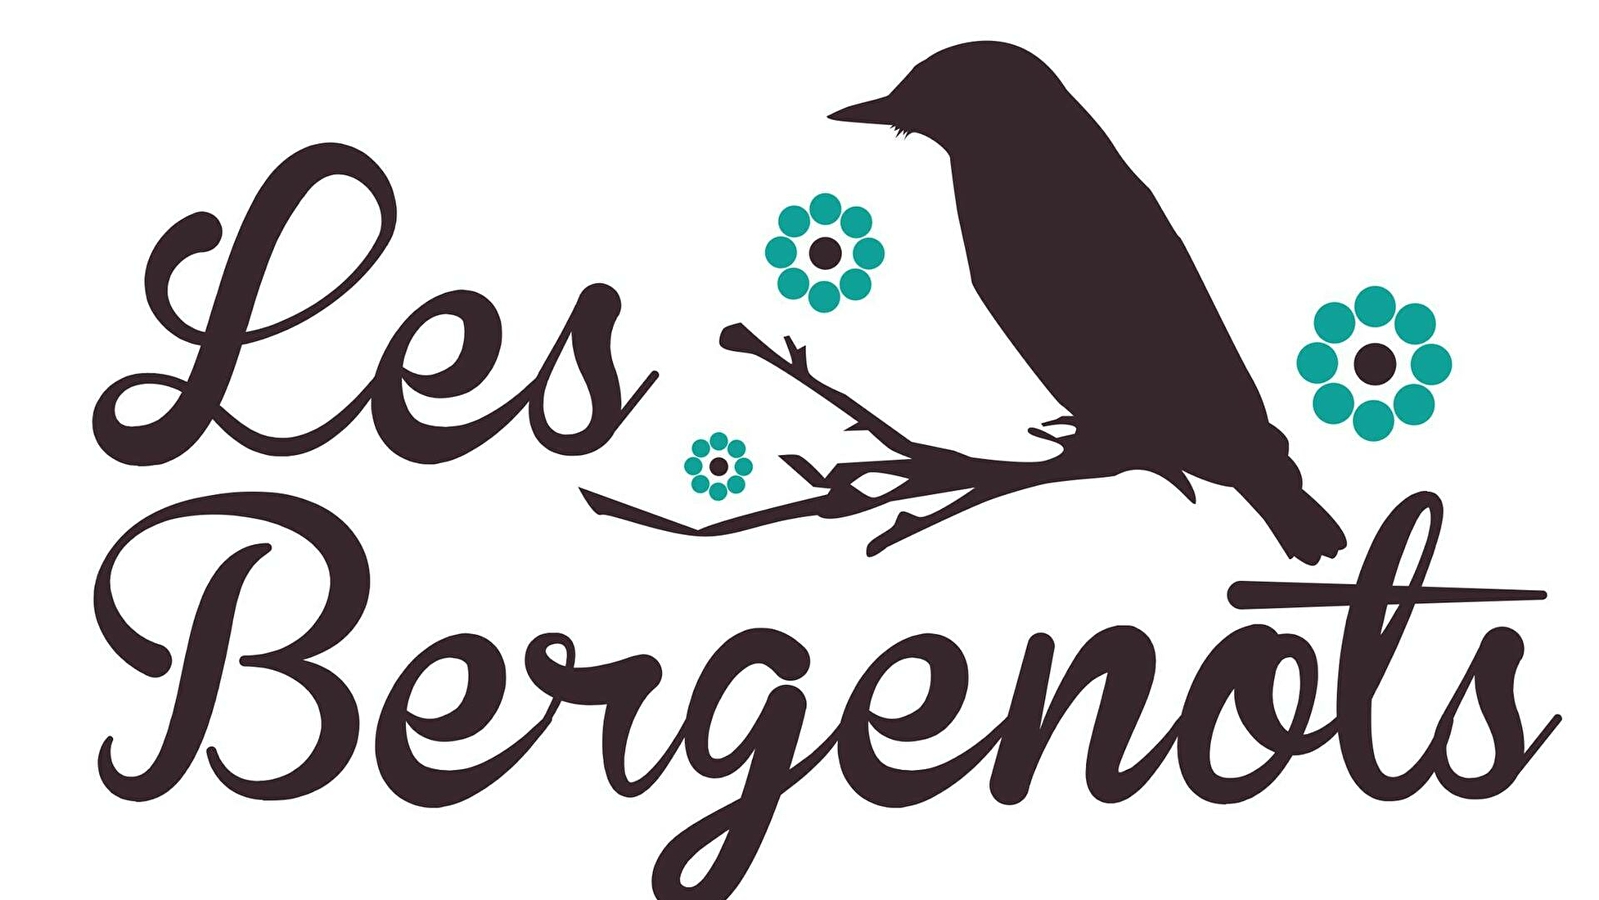 Les Bergenots